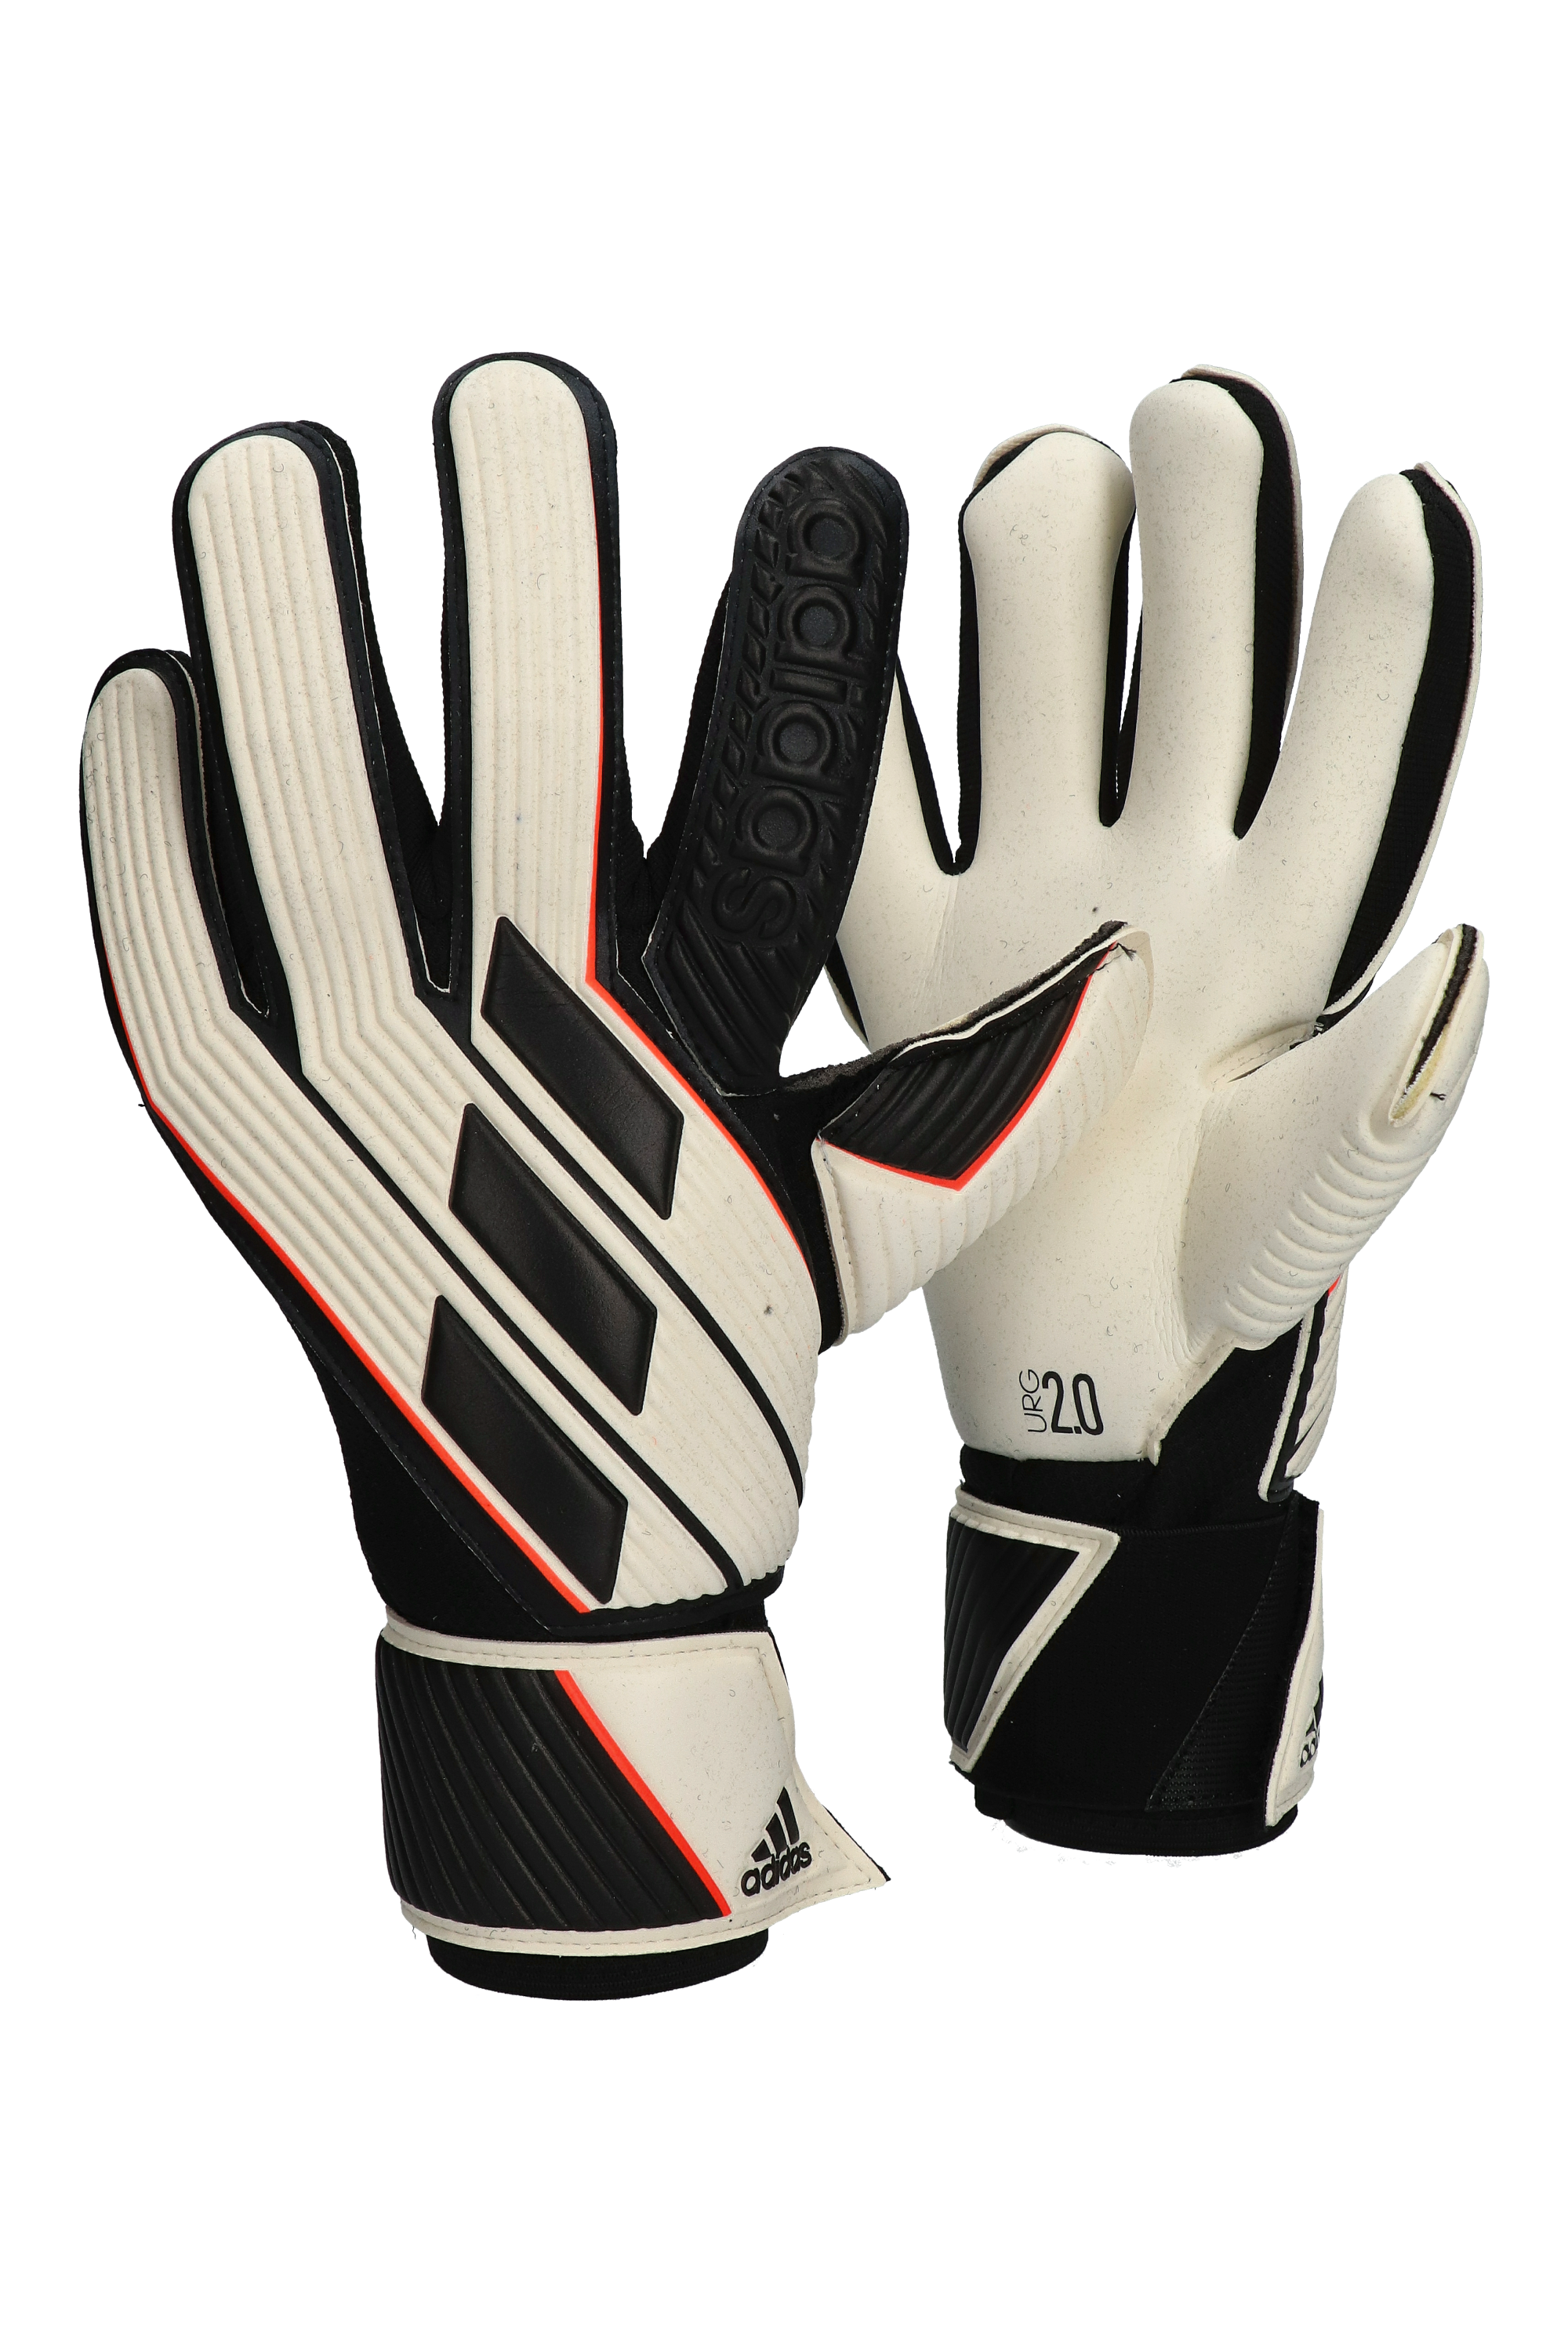 diadora soccer gloves